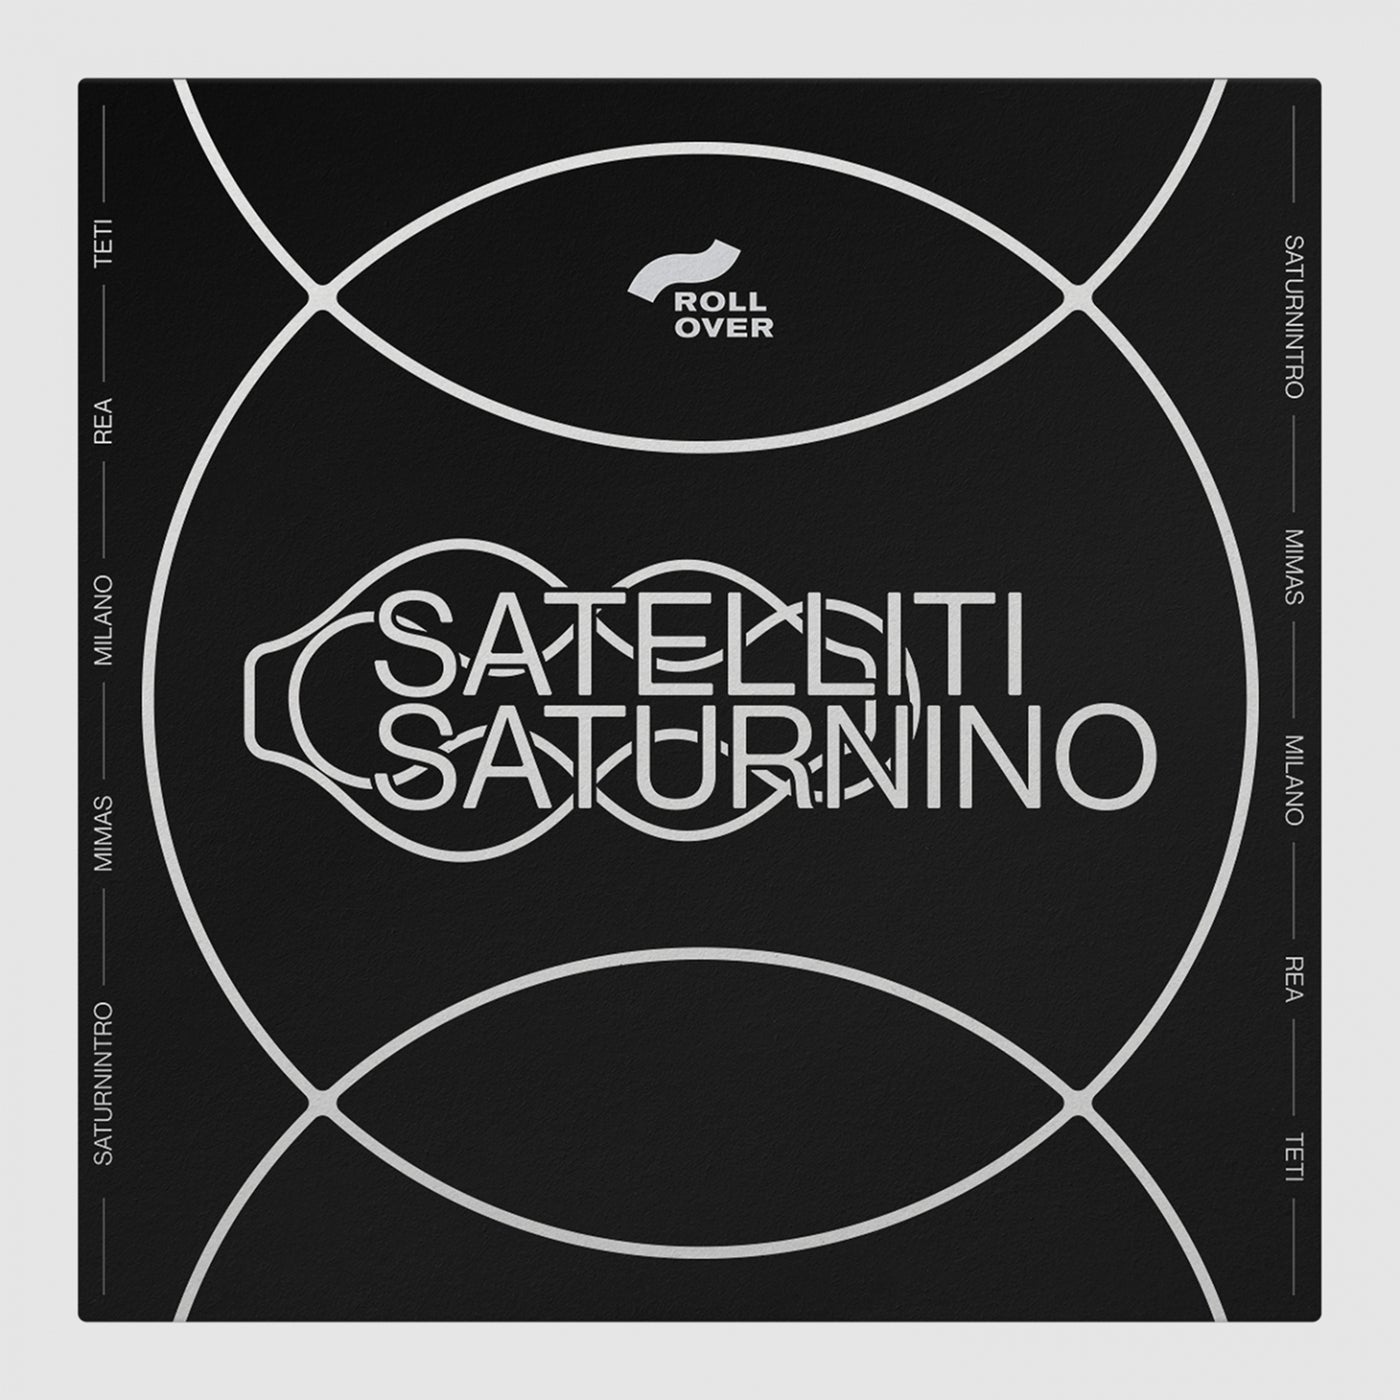 image cover: Saturnino - Satelliti / OVER006X